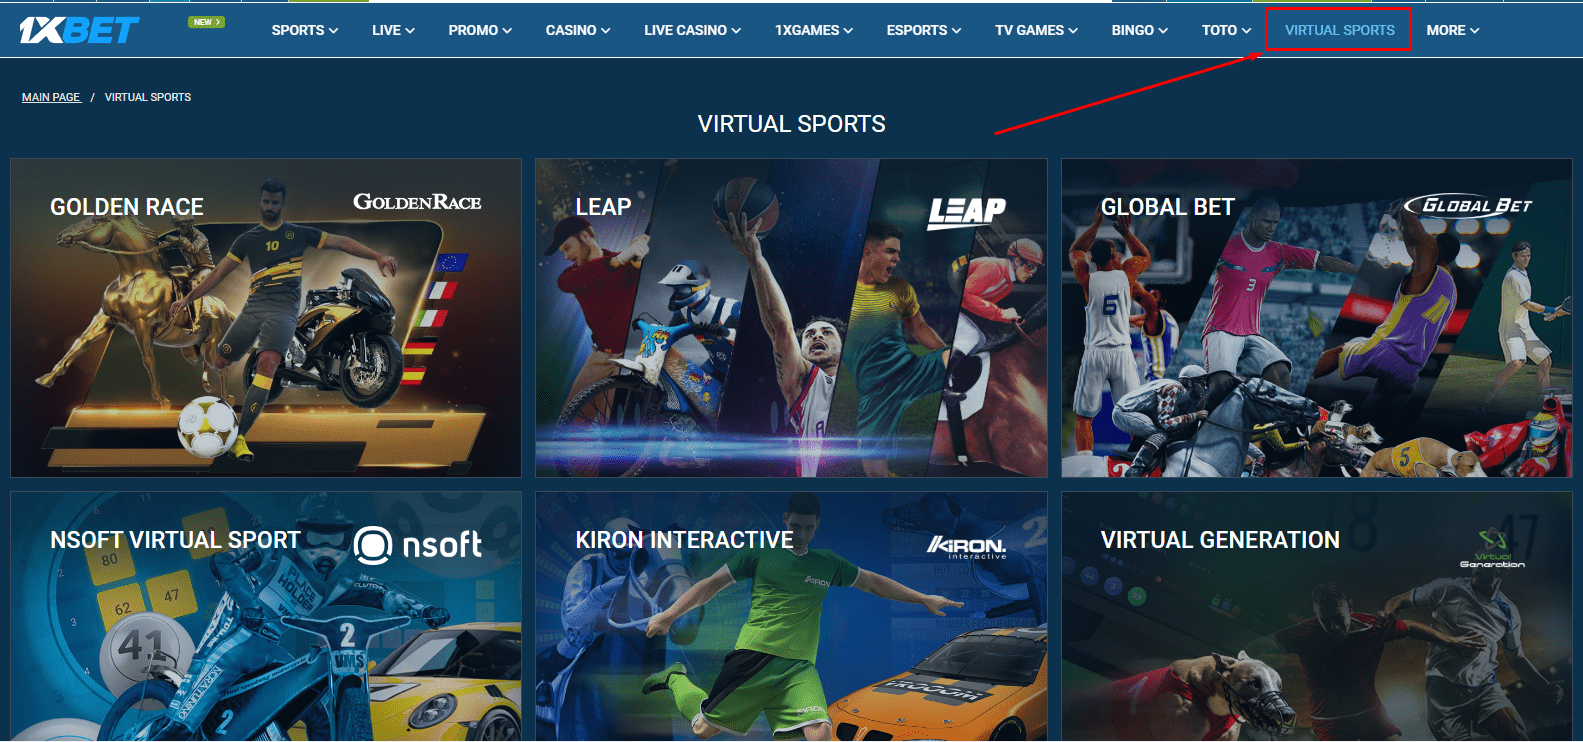 1xbet virtual sports